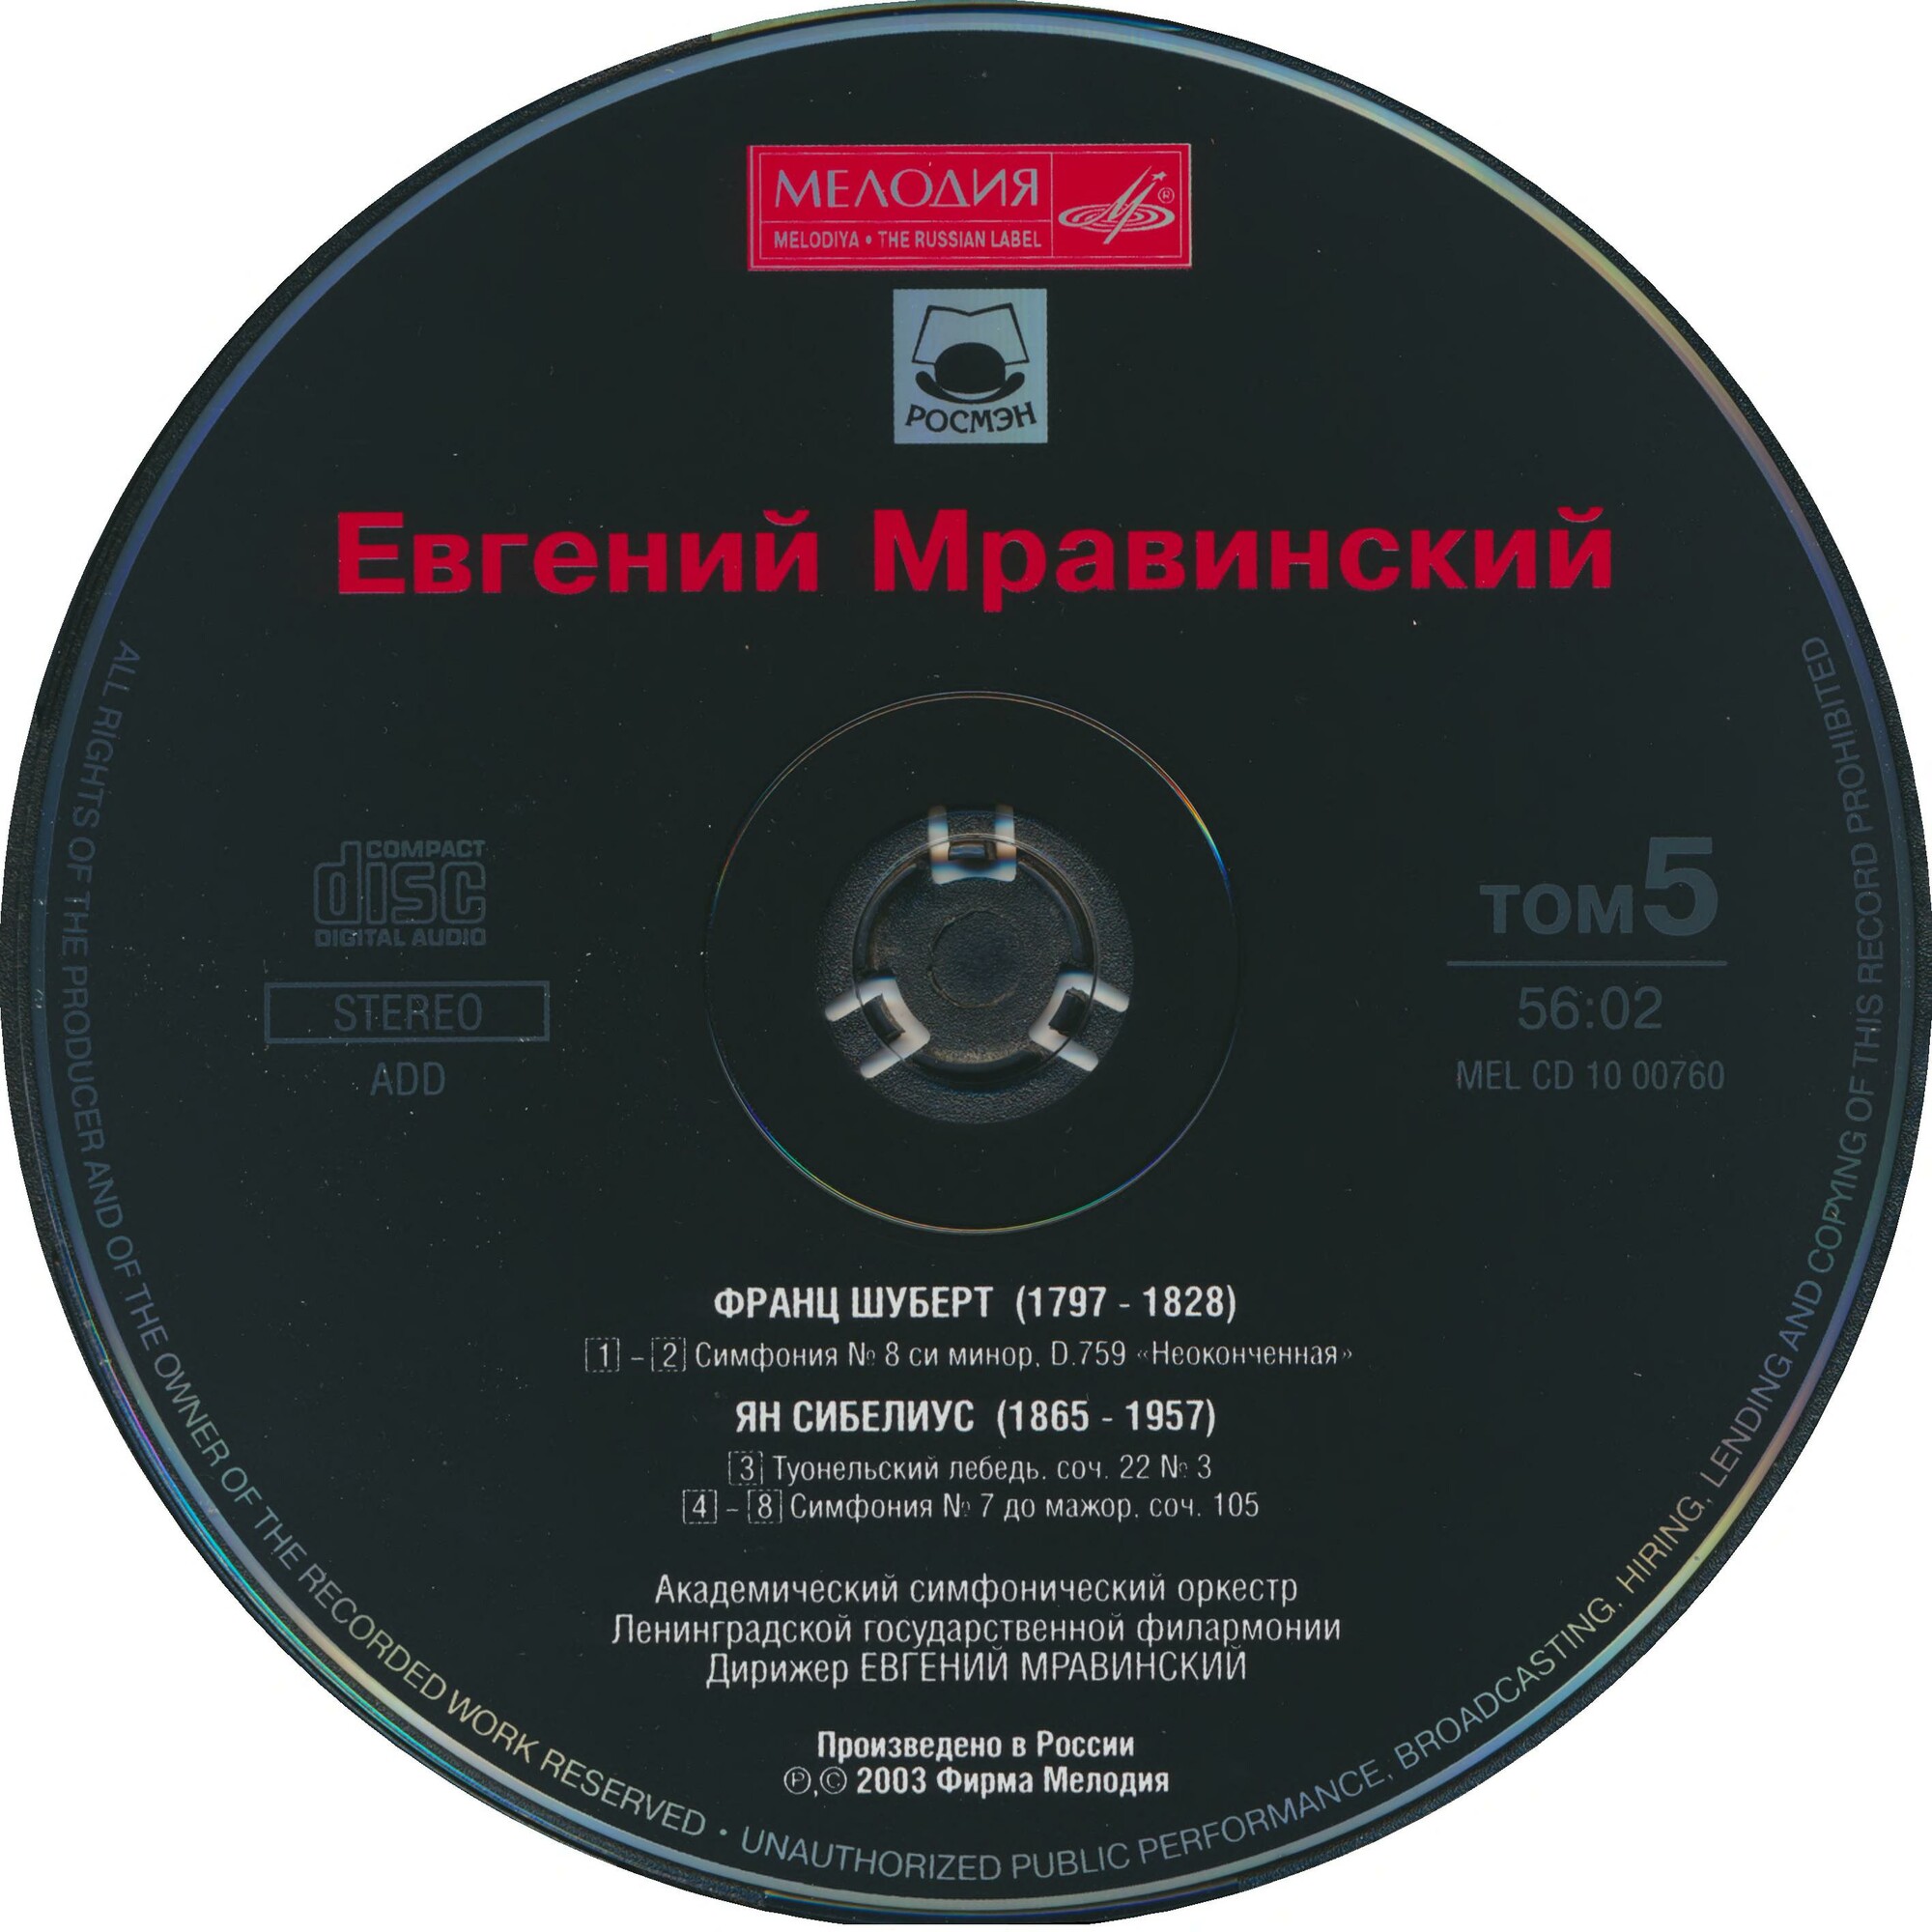 Евгений МРАВИНСКИЙ. Юбилейное издание (5 CD)